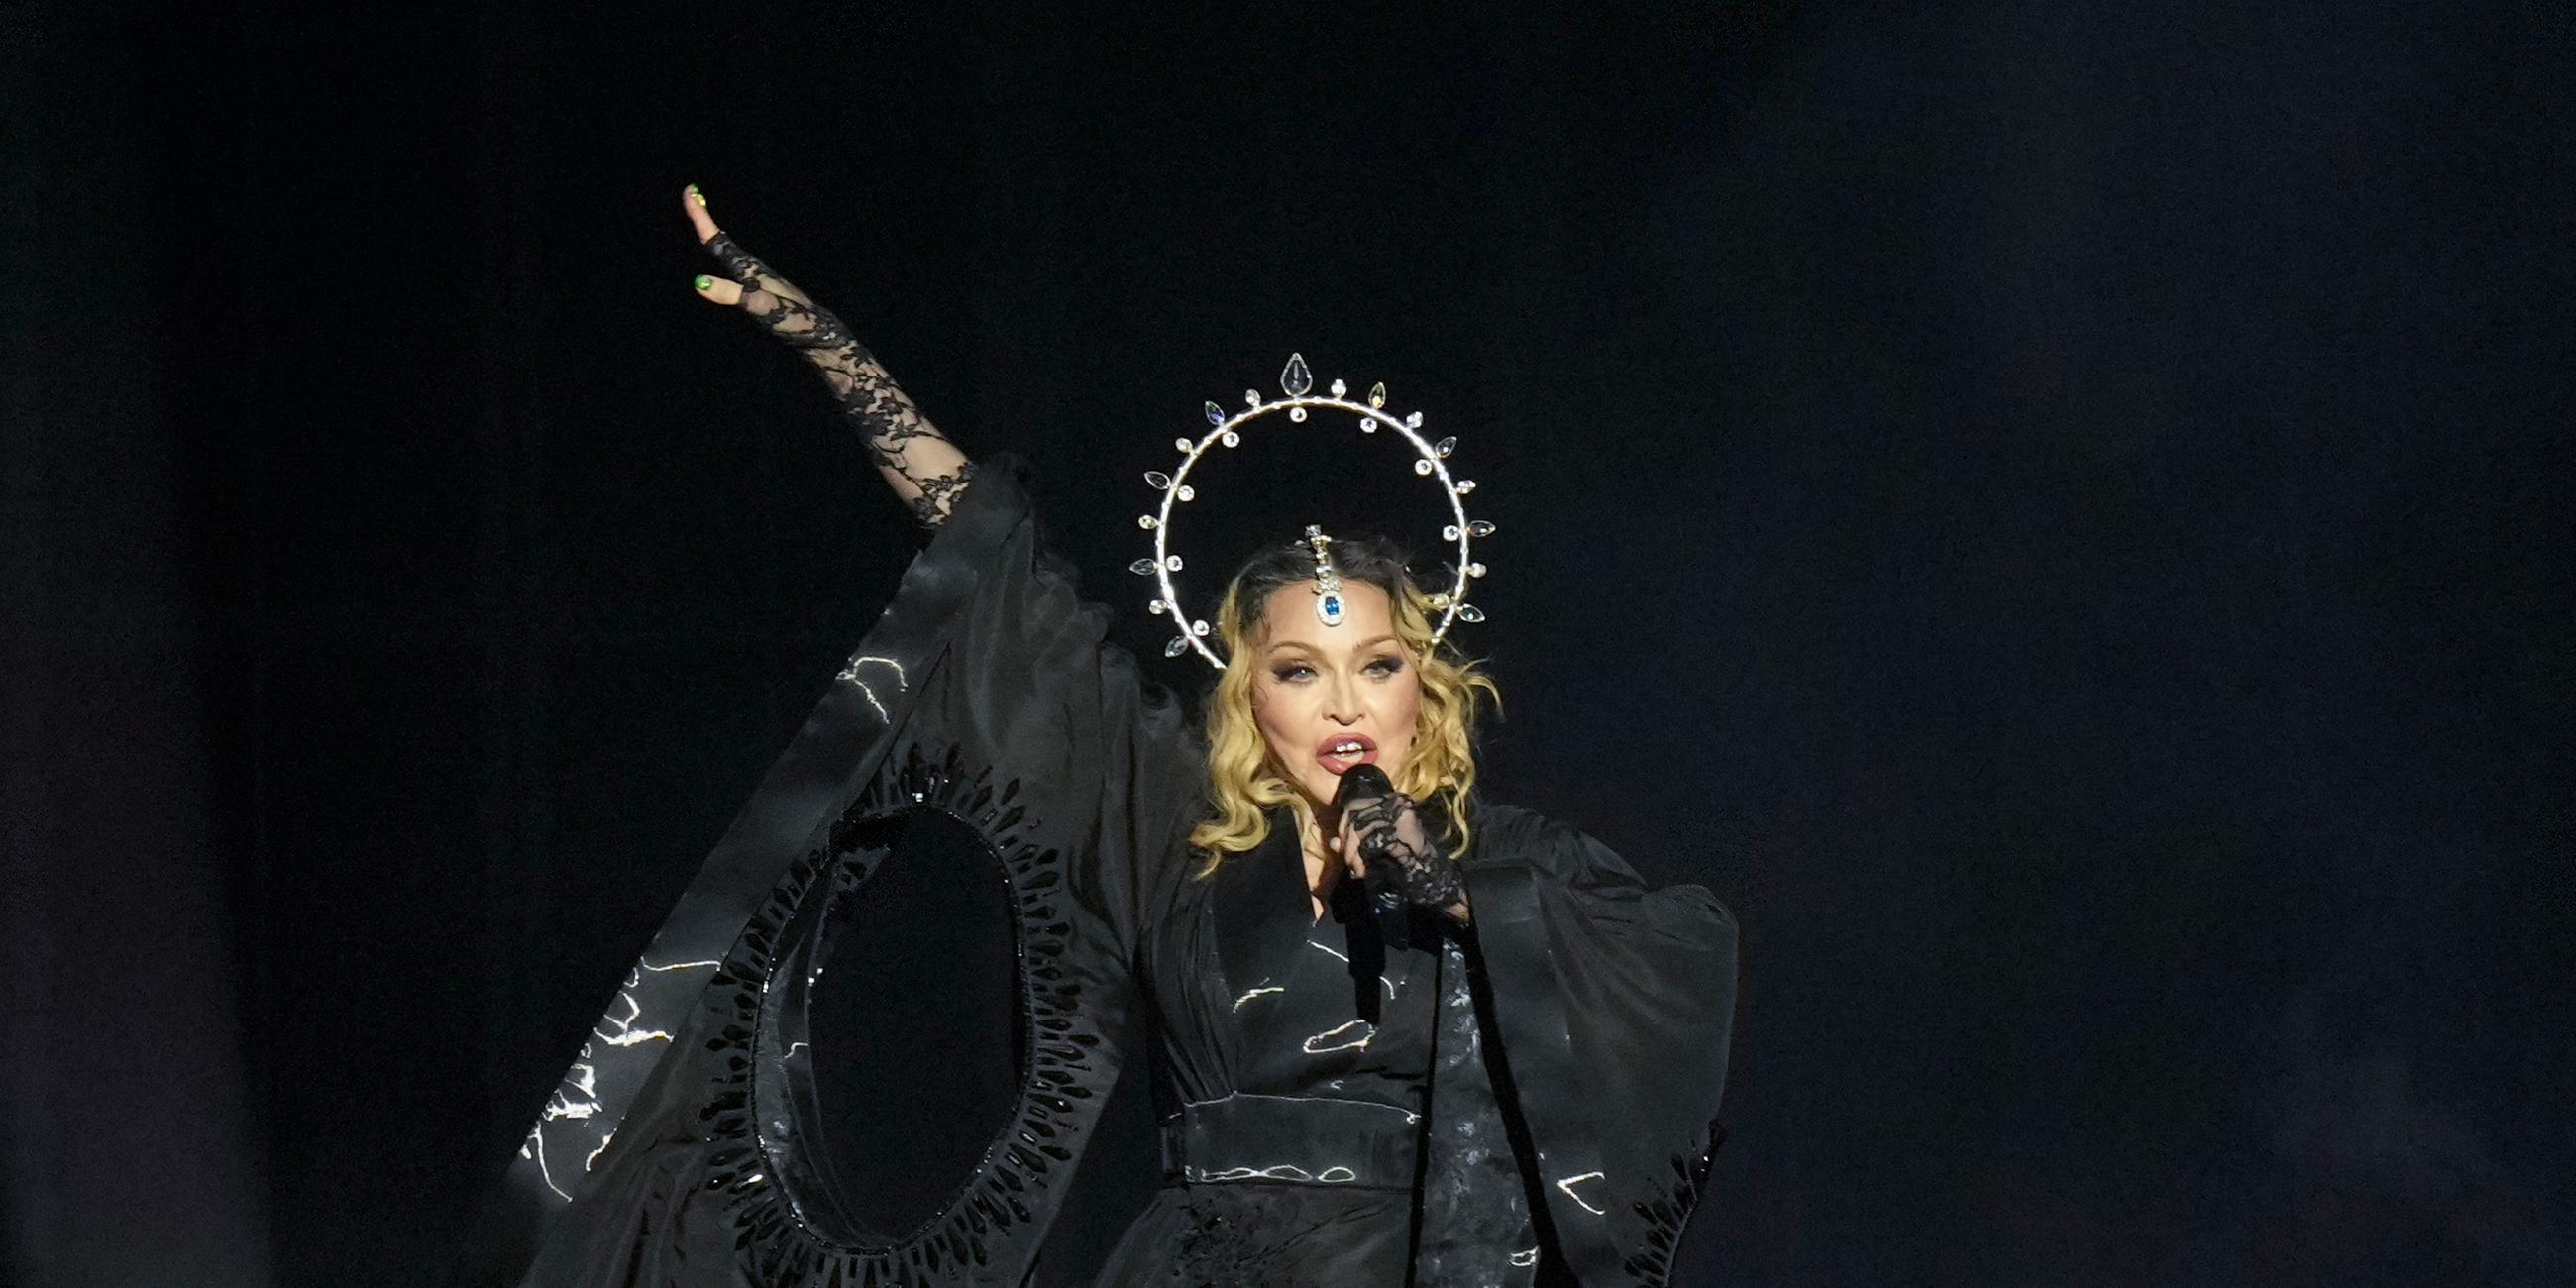 Madonna - ganz in schwarz - hält ihr Mikro während des Auftritts in der Hand.